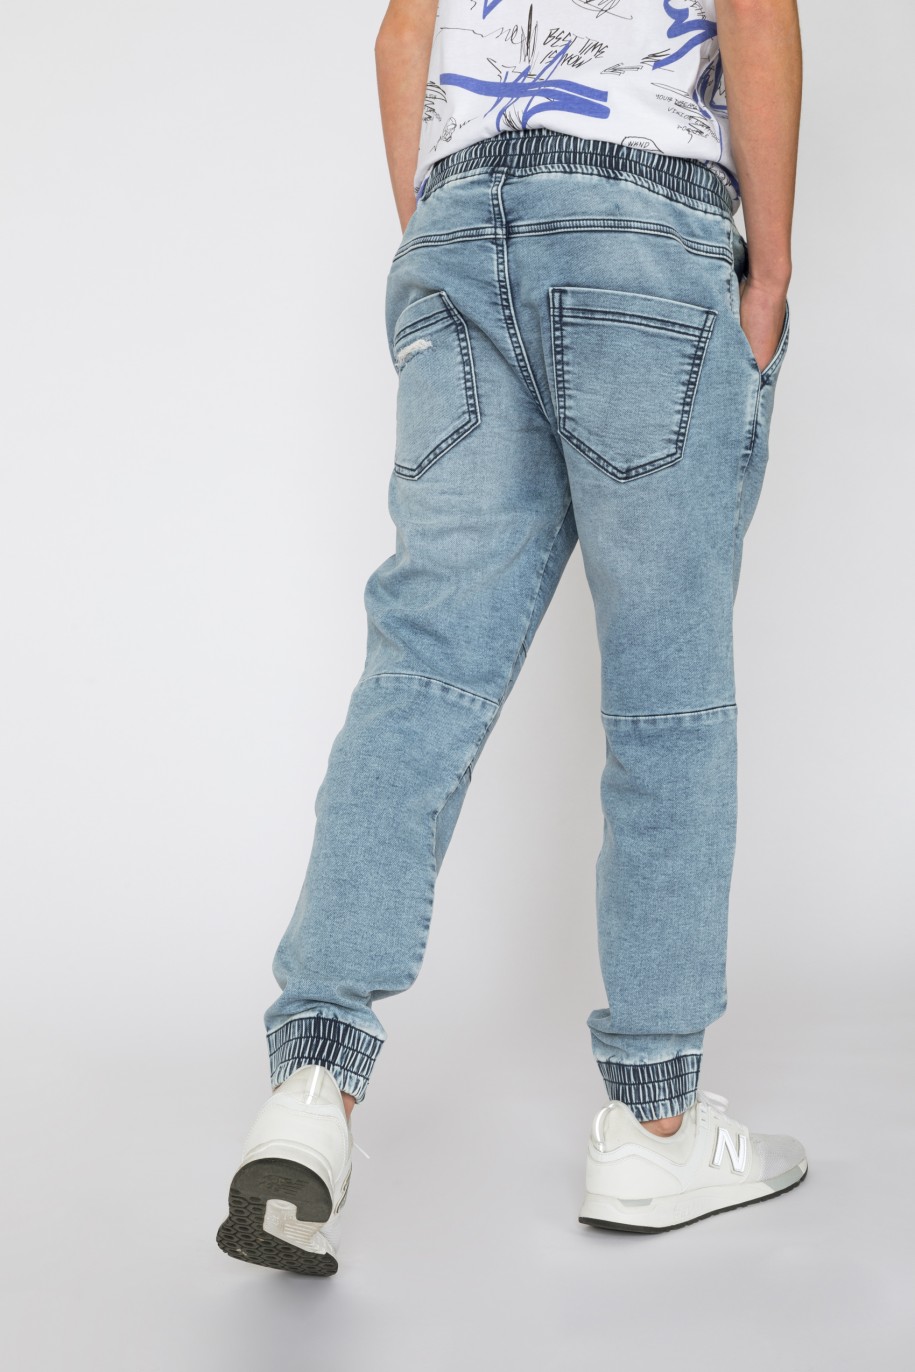 Niebieskie jeansy typu jogger ze ściągaczami dla chłopaka - 33579